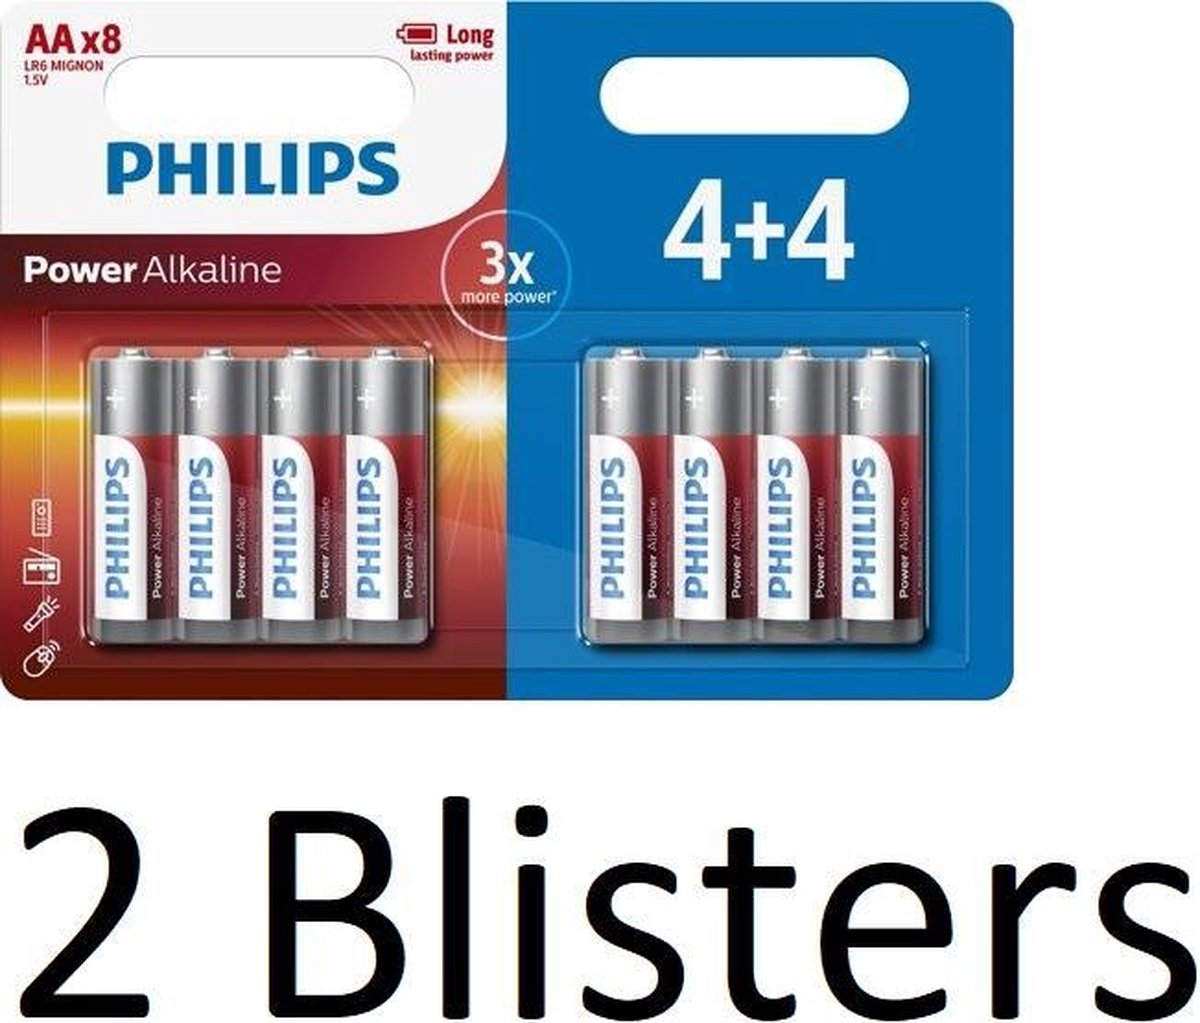 16 Stuks (2 Blisters a 8 st) Philips Power Alkaline AA Batterij 4+4